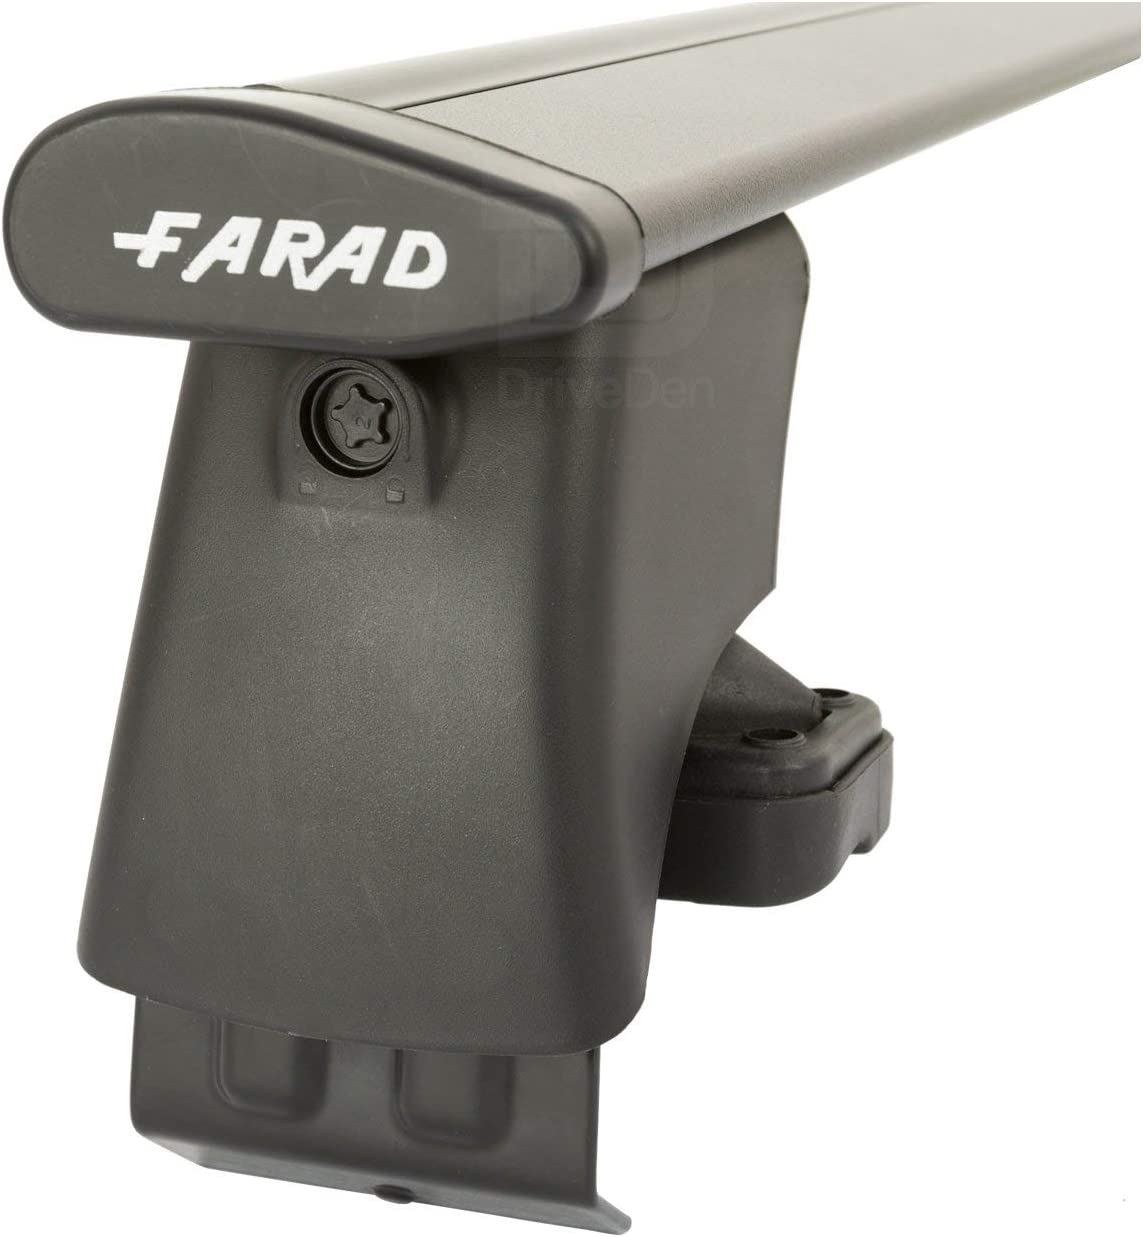 FARAD-Kit H2 per barre portatutto - Infiniti Q50 2015> (senza corrimano)